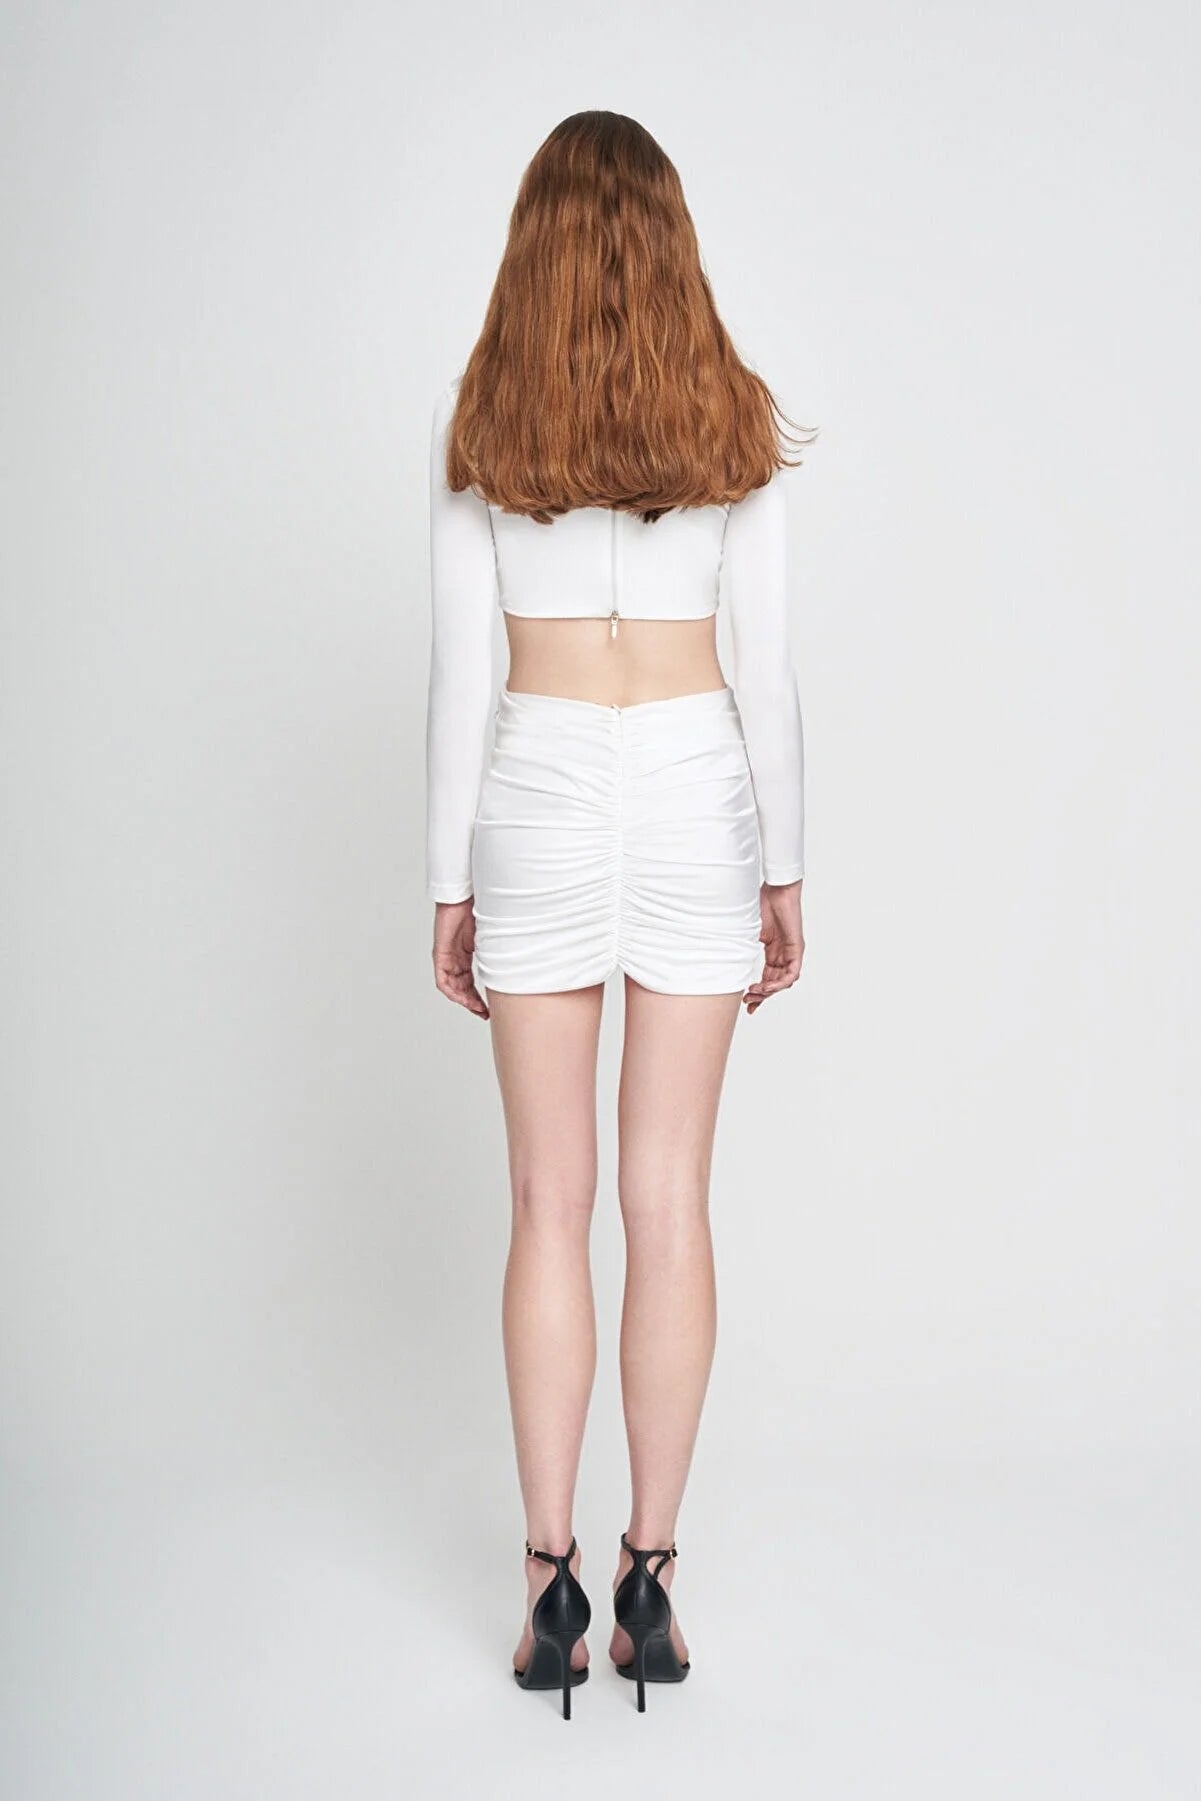 Marisa White Dress